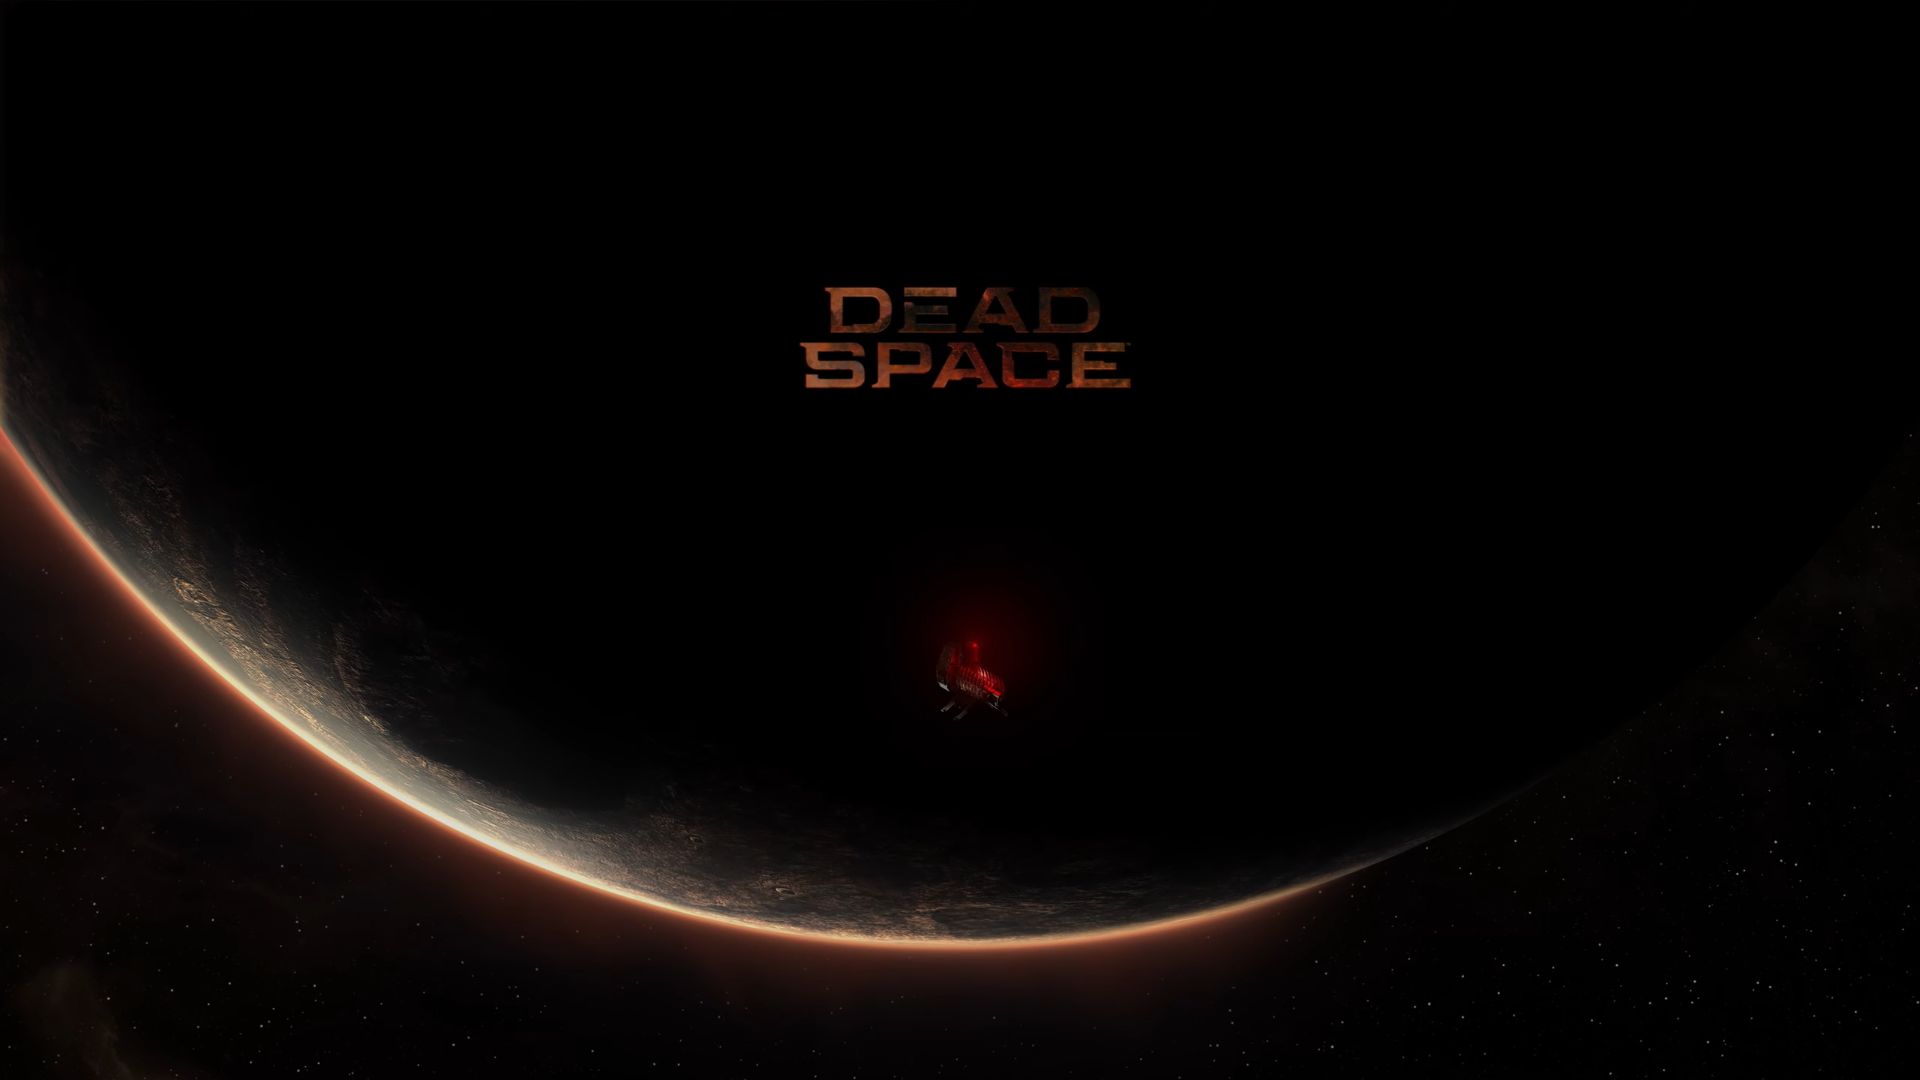 ข่าวลือ! EA จะจัดงานรอบสื่อของ Dead Space ฉบับรีเมกในเดือนกันยายนนี้